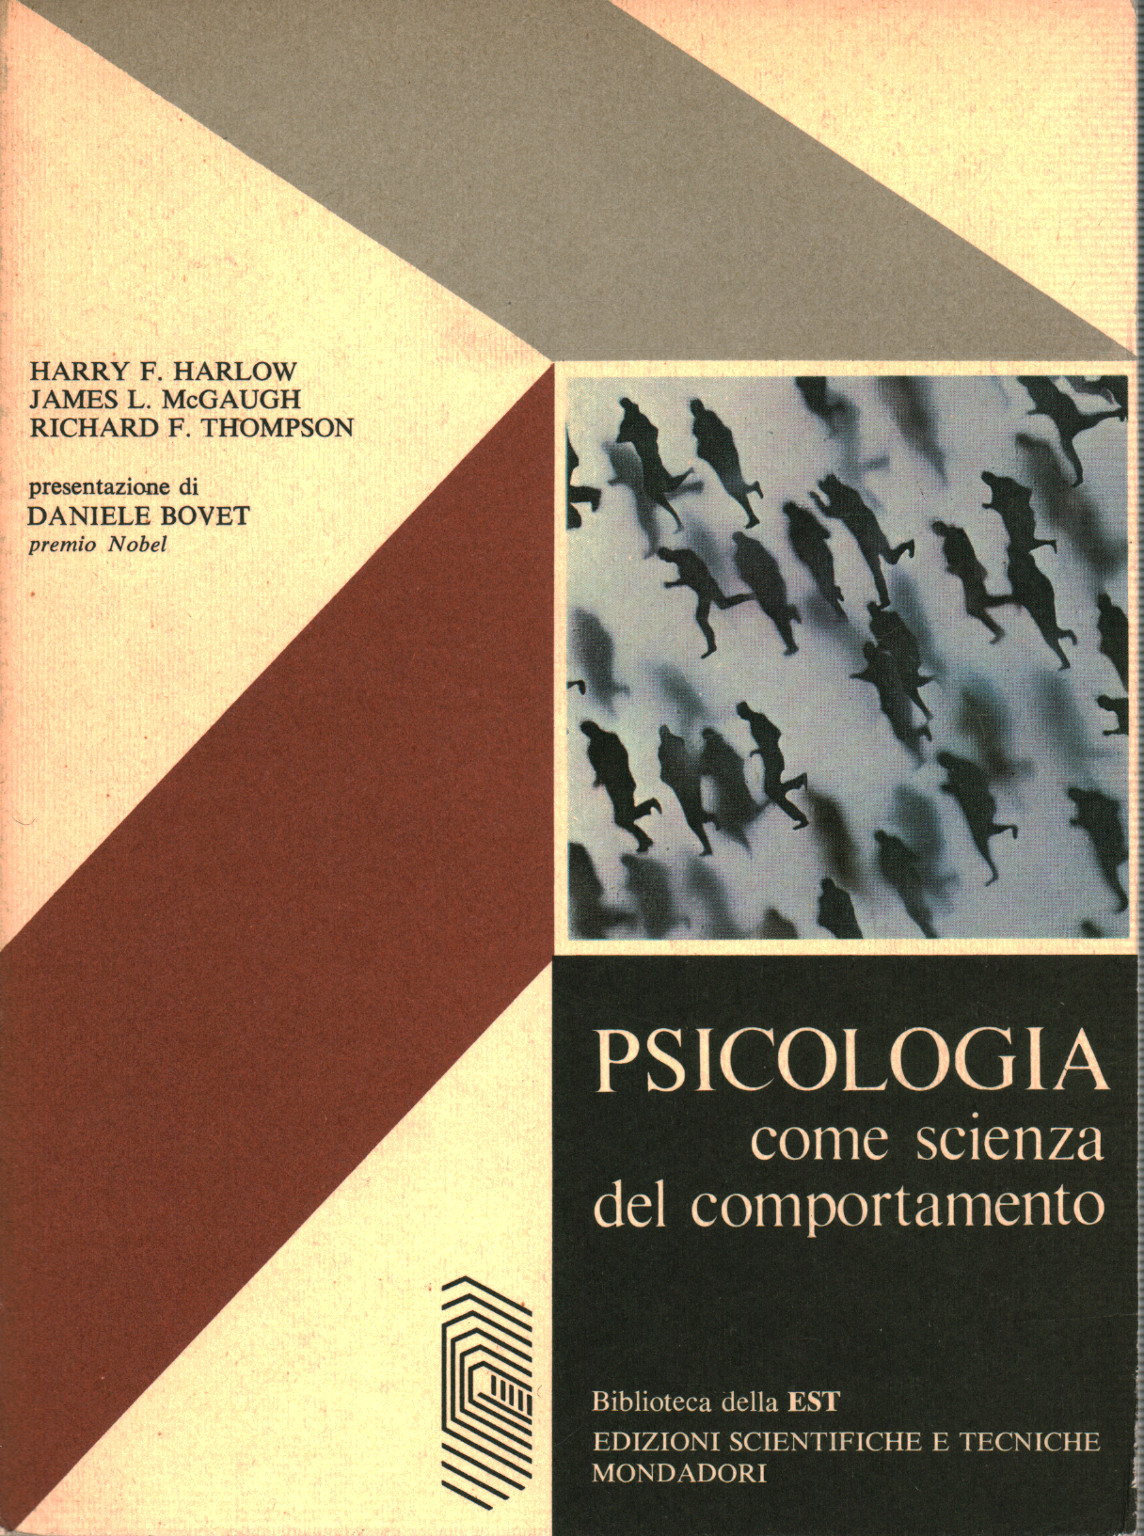 Psicologia come scienza del comportamento, s.a.